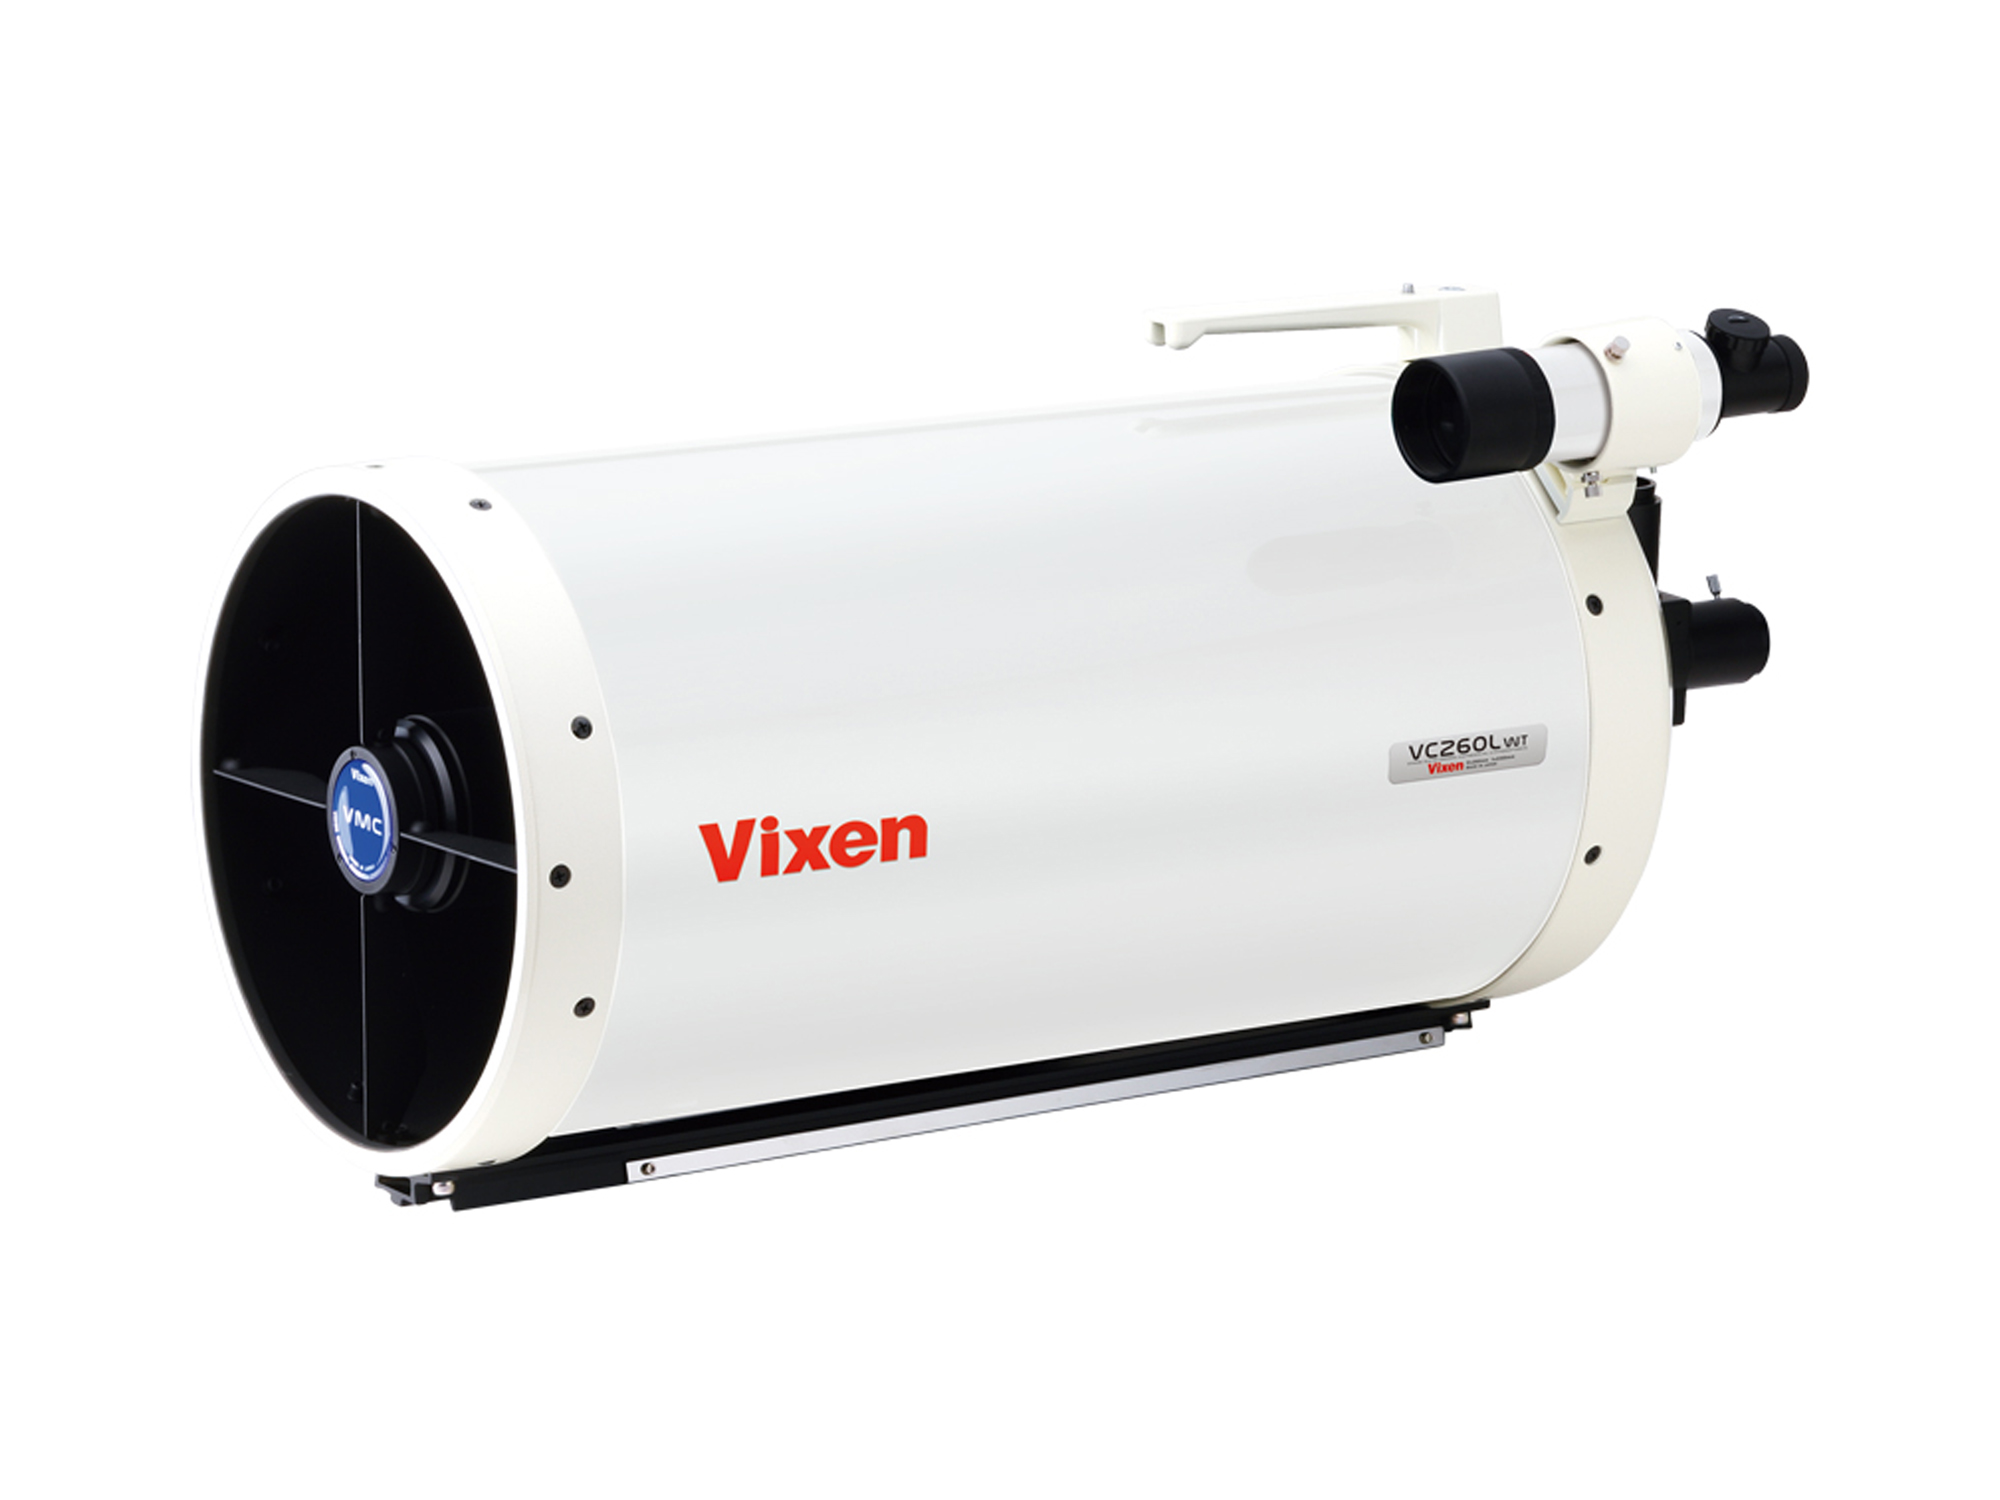 Vixen AXD2 with VMC 260 Maksutov-Cassegrain Telescope